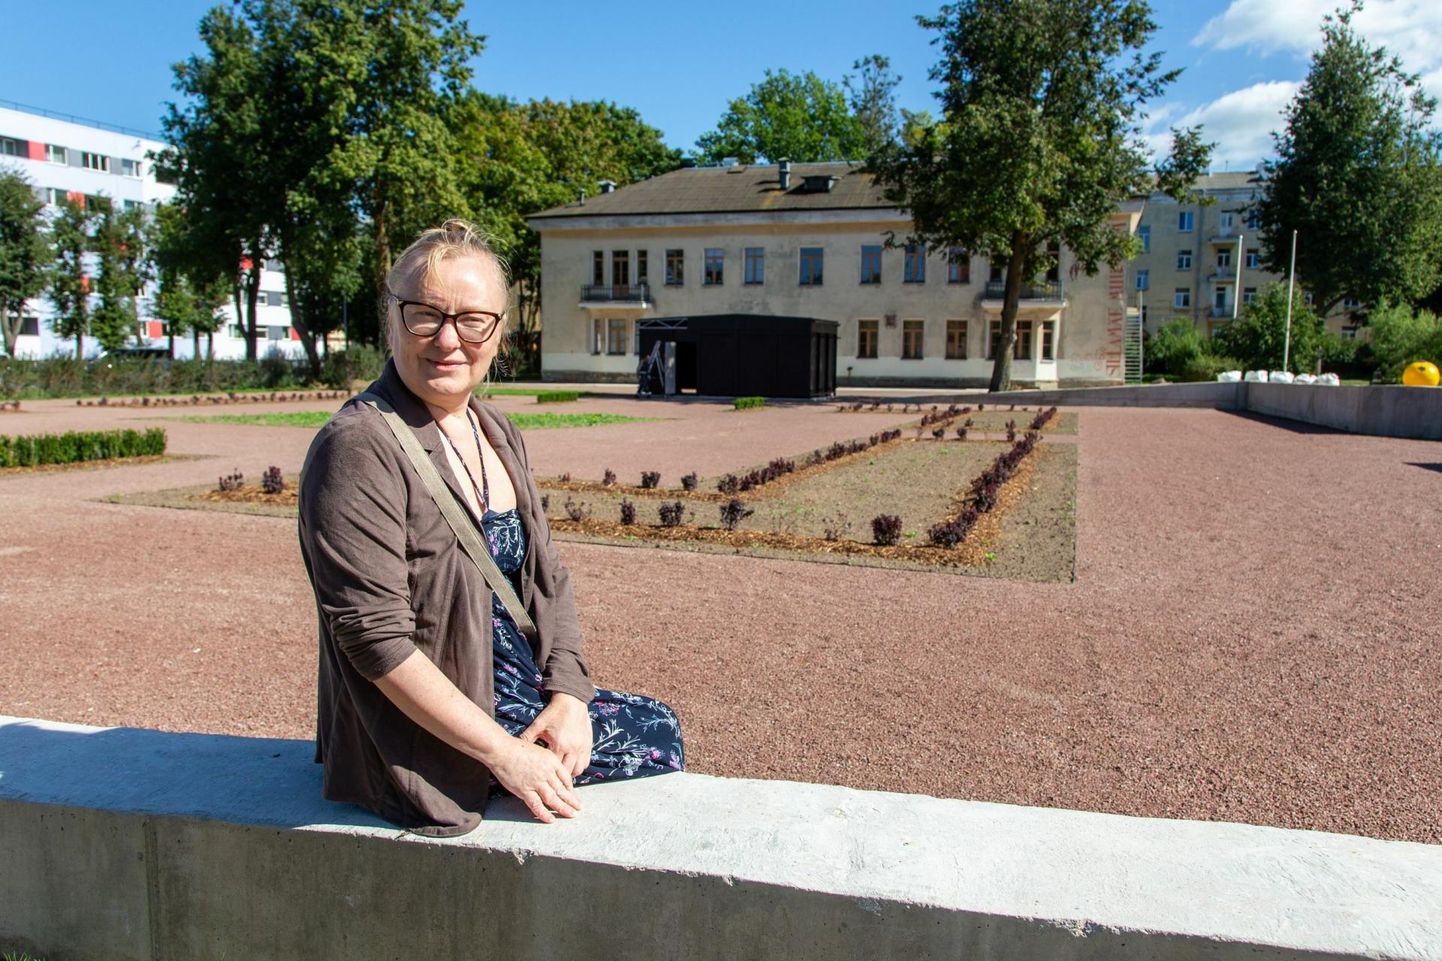 Jelena Antuševa teeb nõukogude aja teemaparki arendades juba ka tulevikuplaane.

 